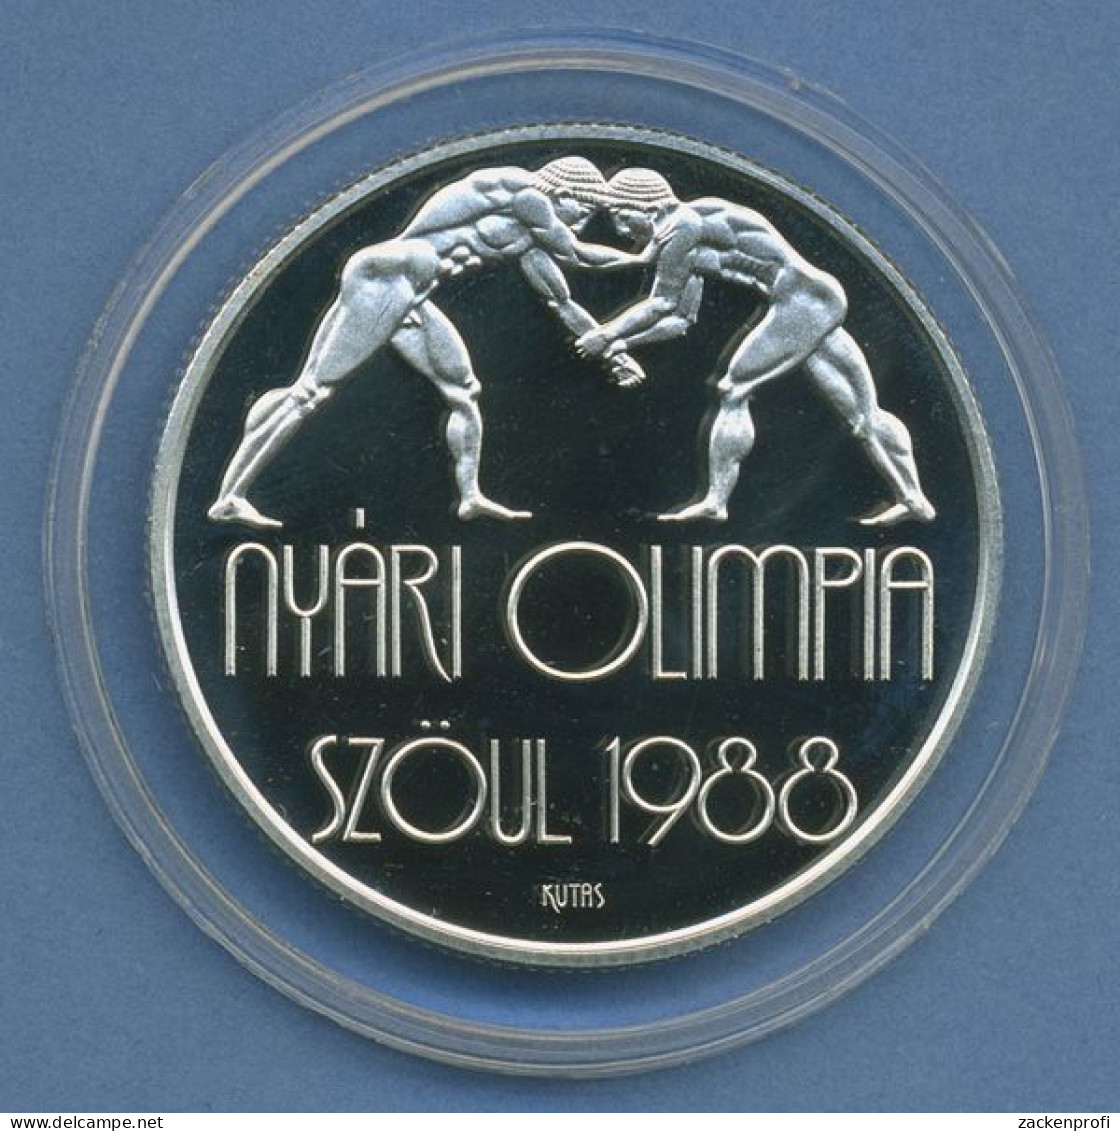 Ungarn 500 Forint 1987 Olympia Ringen, Silber, KM 660 PP In Kapsel (m4414) - Hongrie